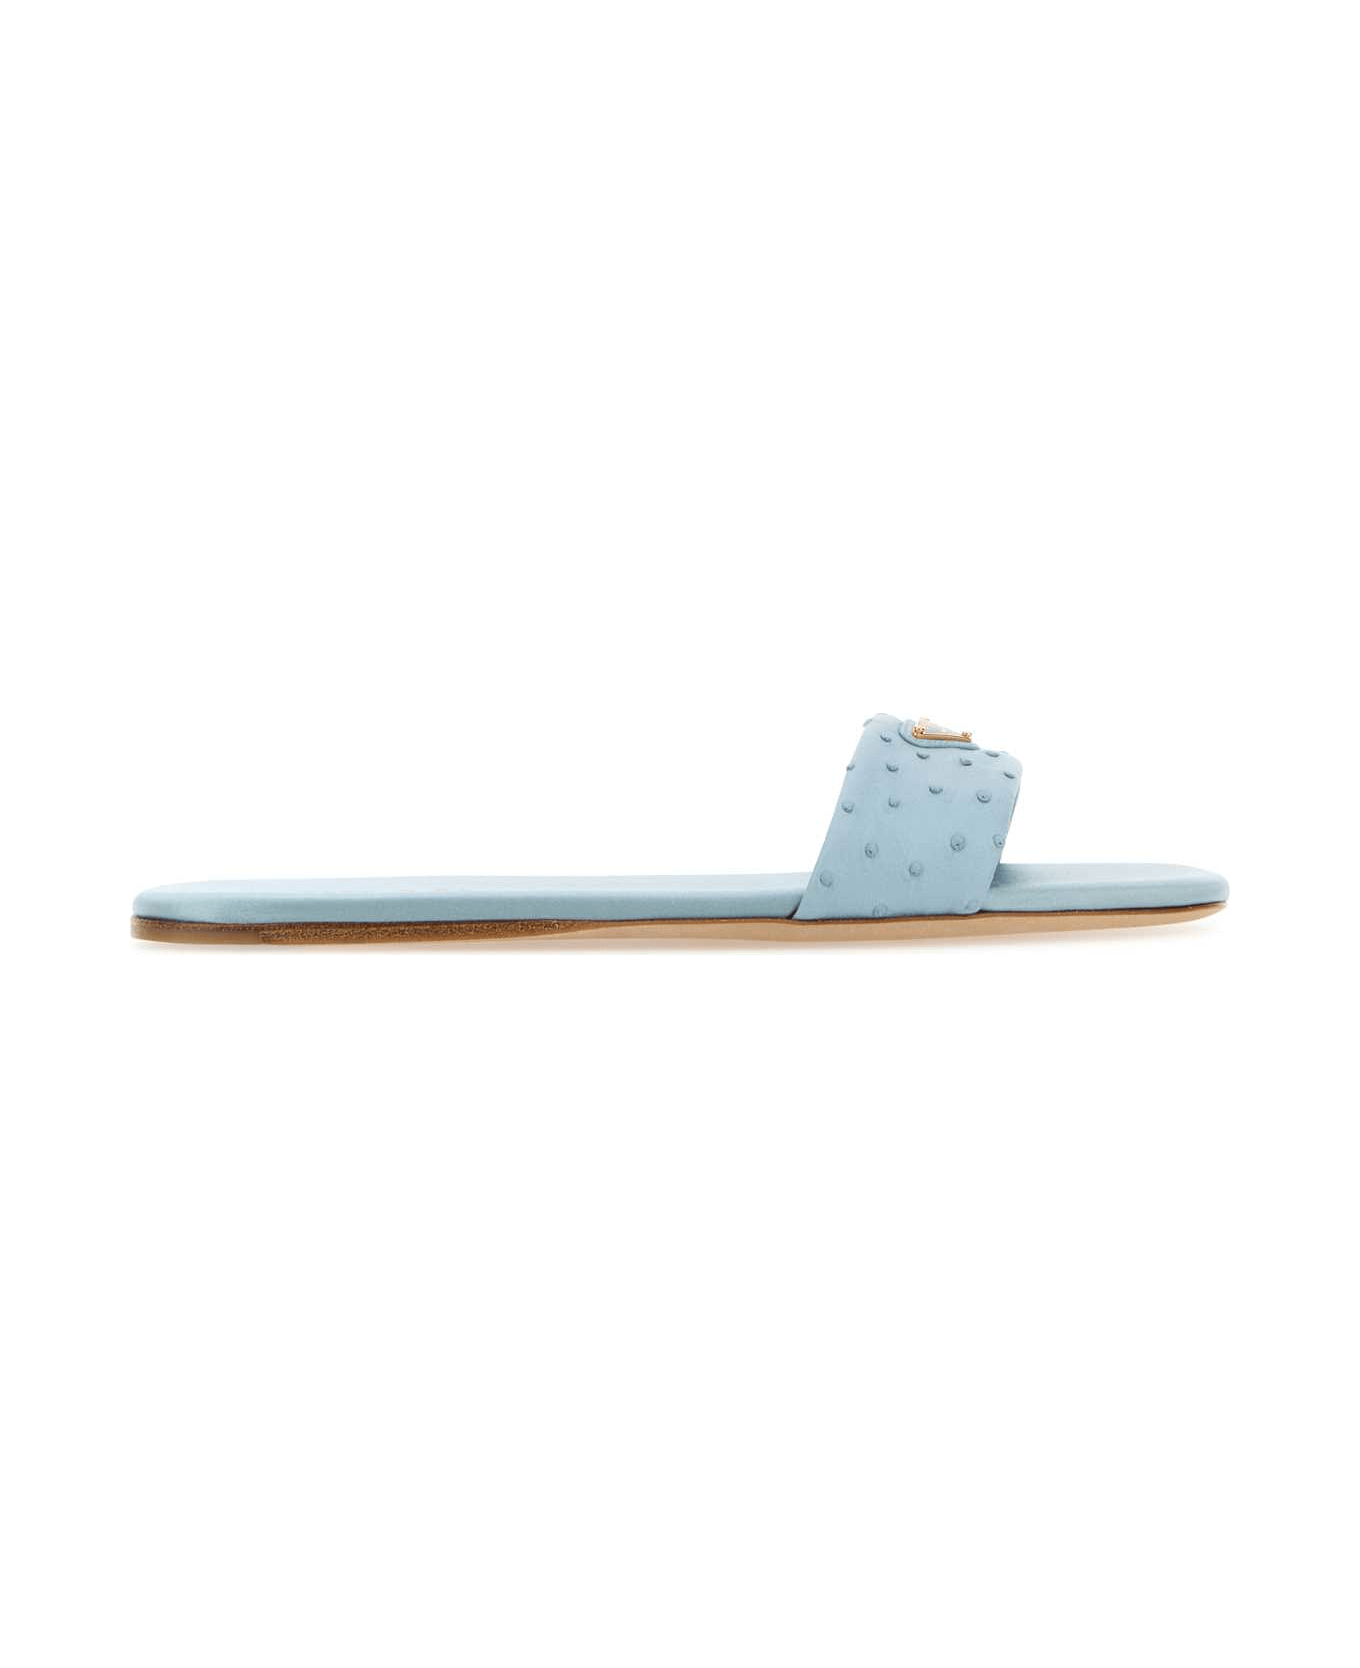 Prada Light Blue Leather Slippers - CELESTE サンダル